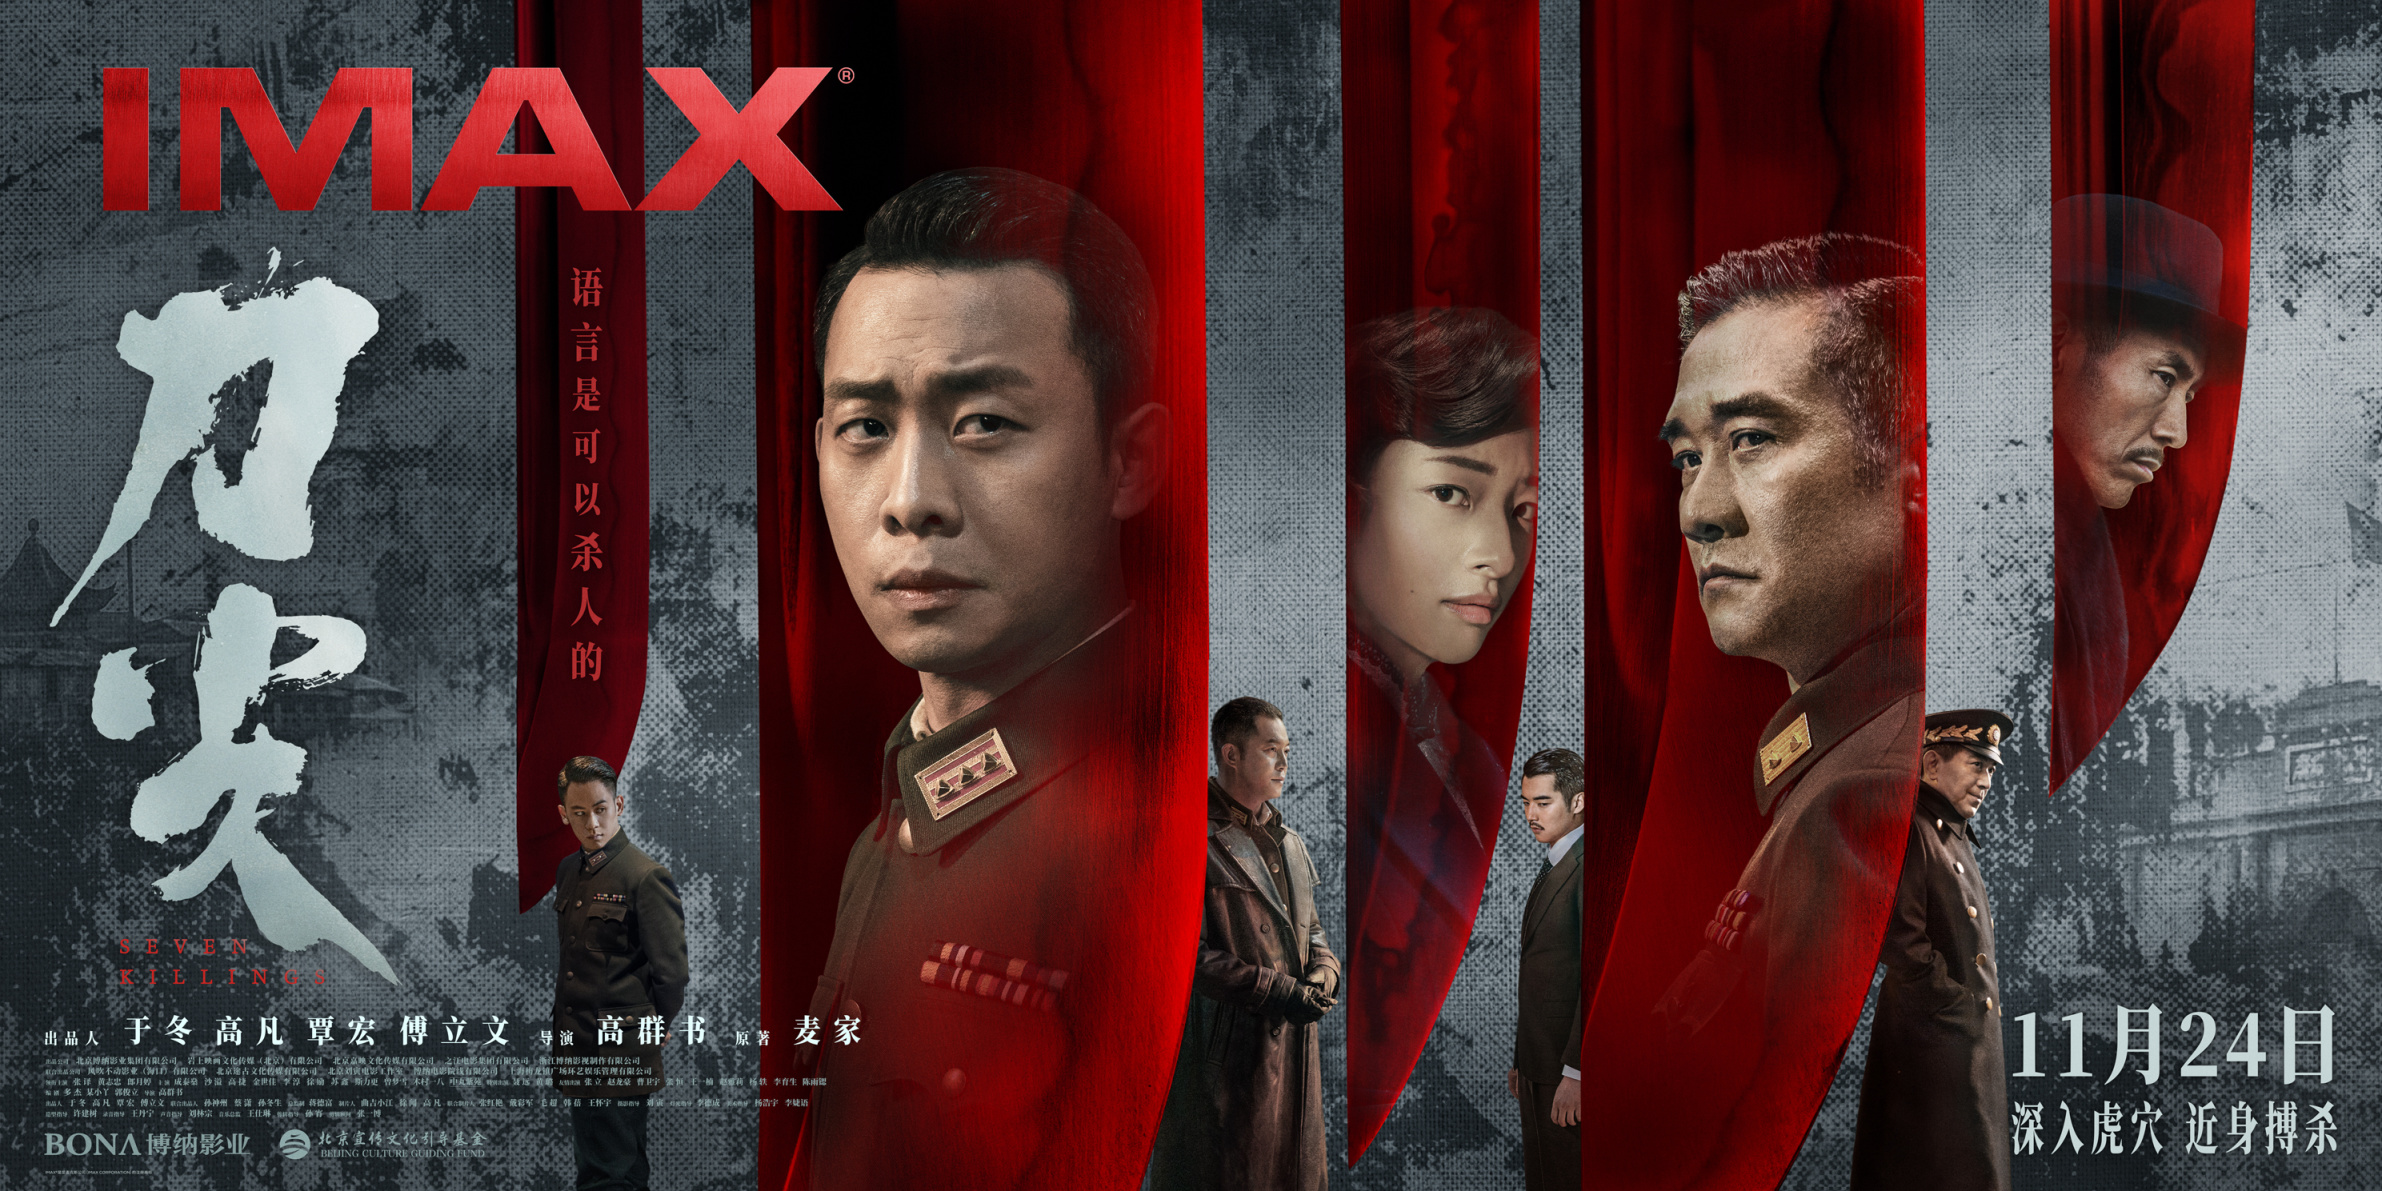 【影視動漫】諜戰電影《刀尖》11月24日登陸IMAX影院-第0張